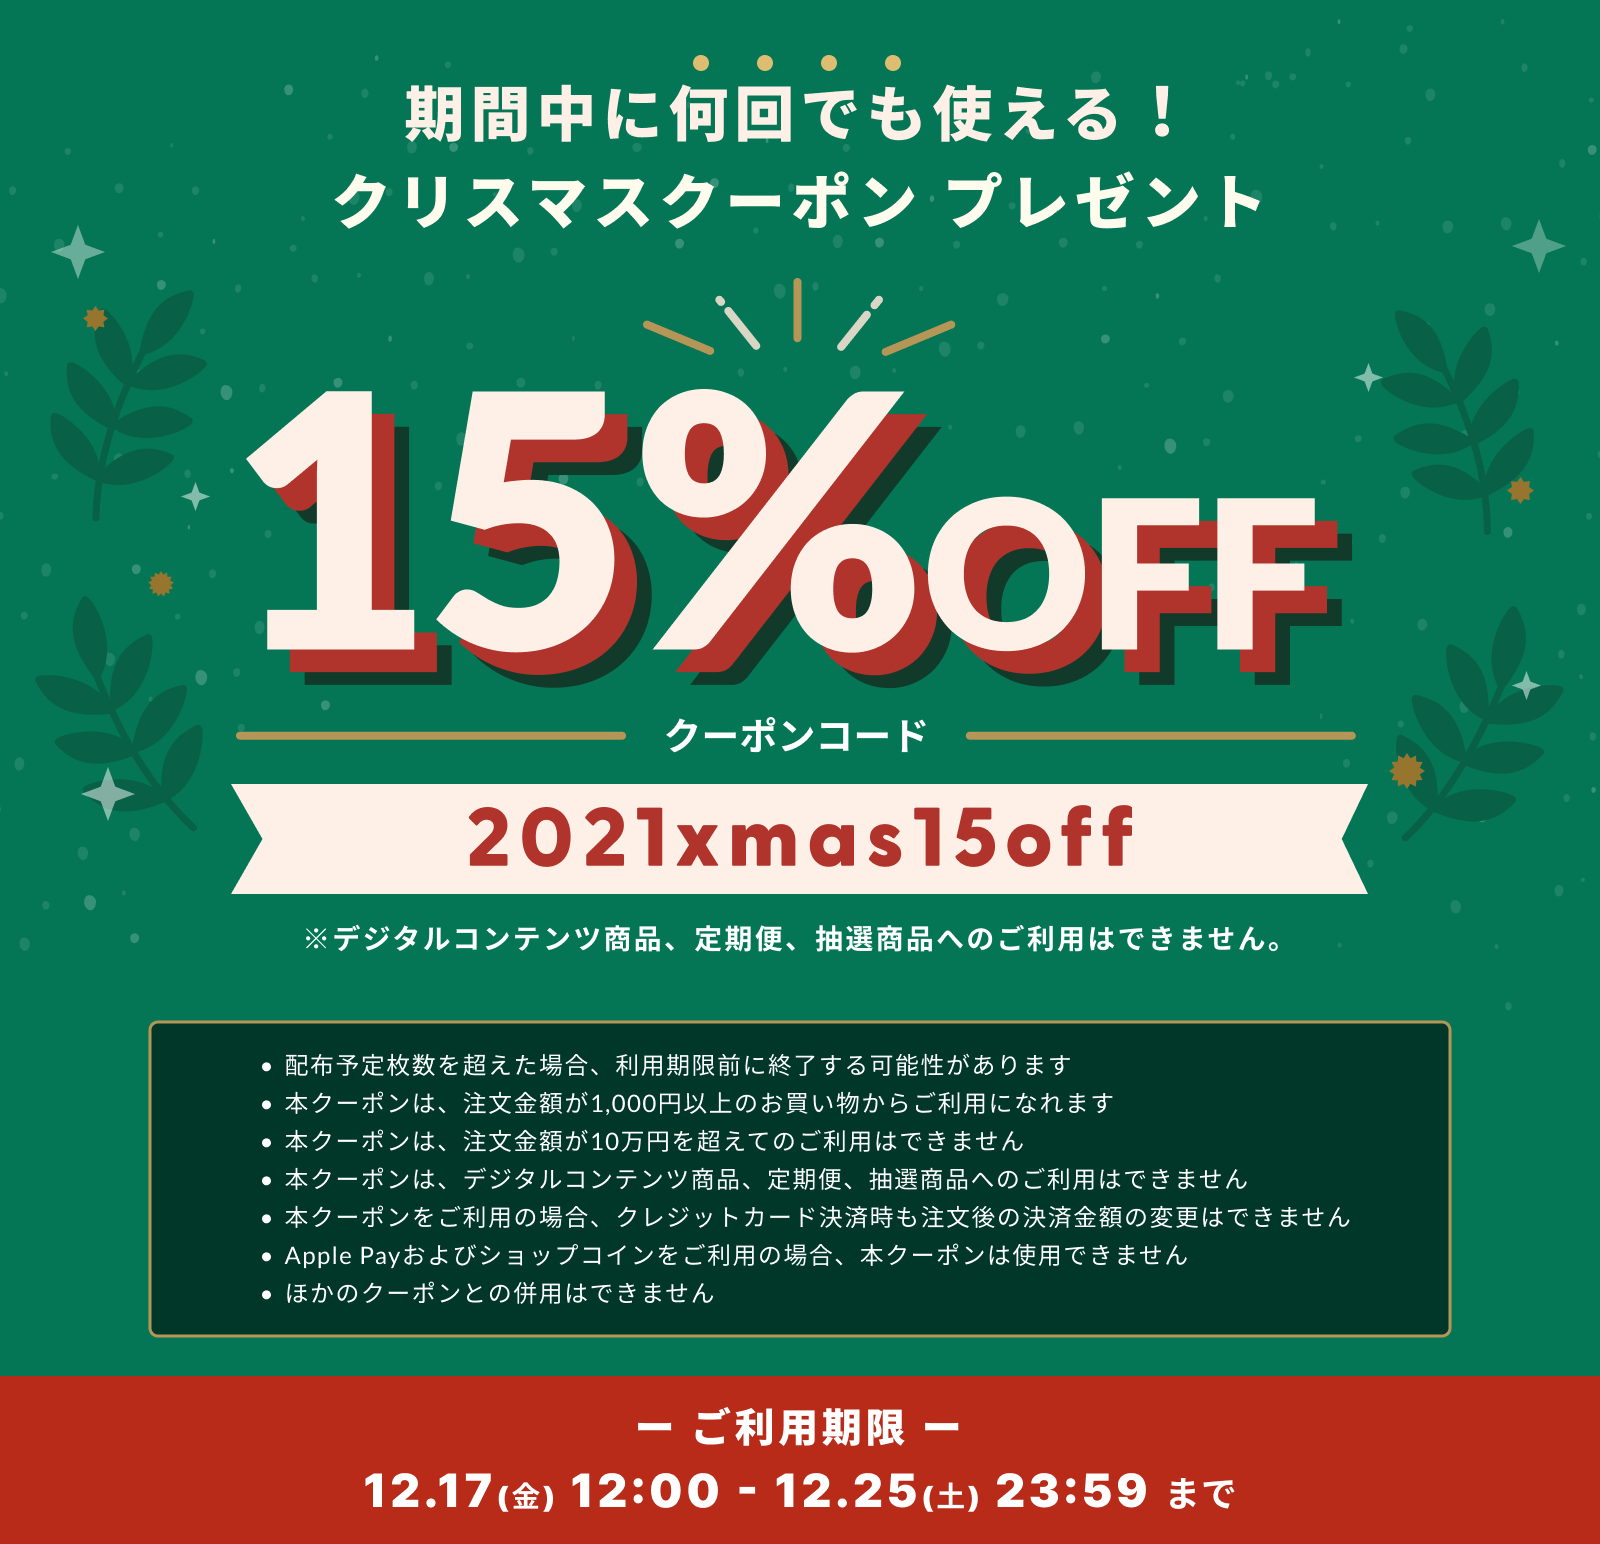 【期間限定】15%OFFクーポンプレゼント